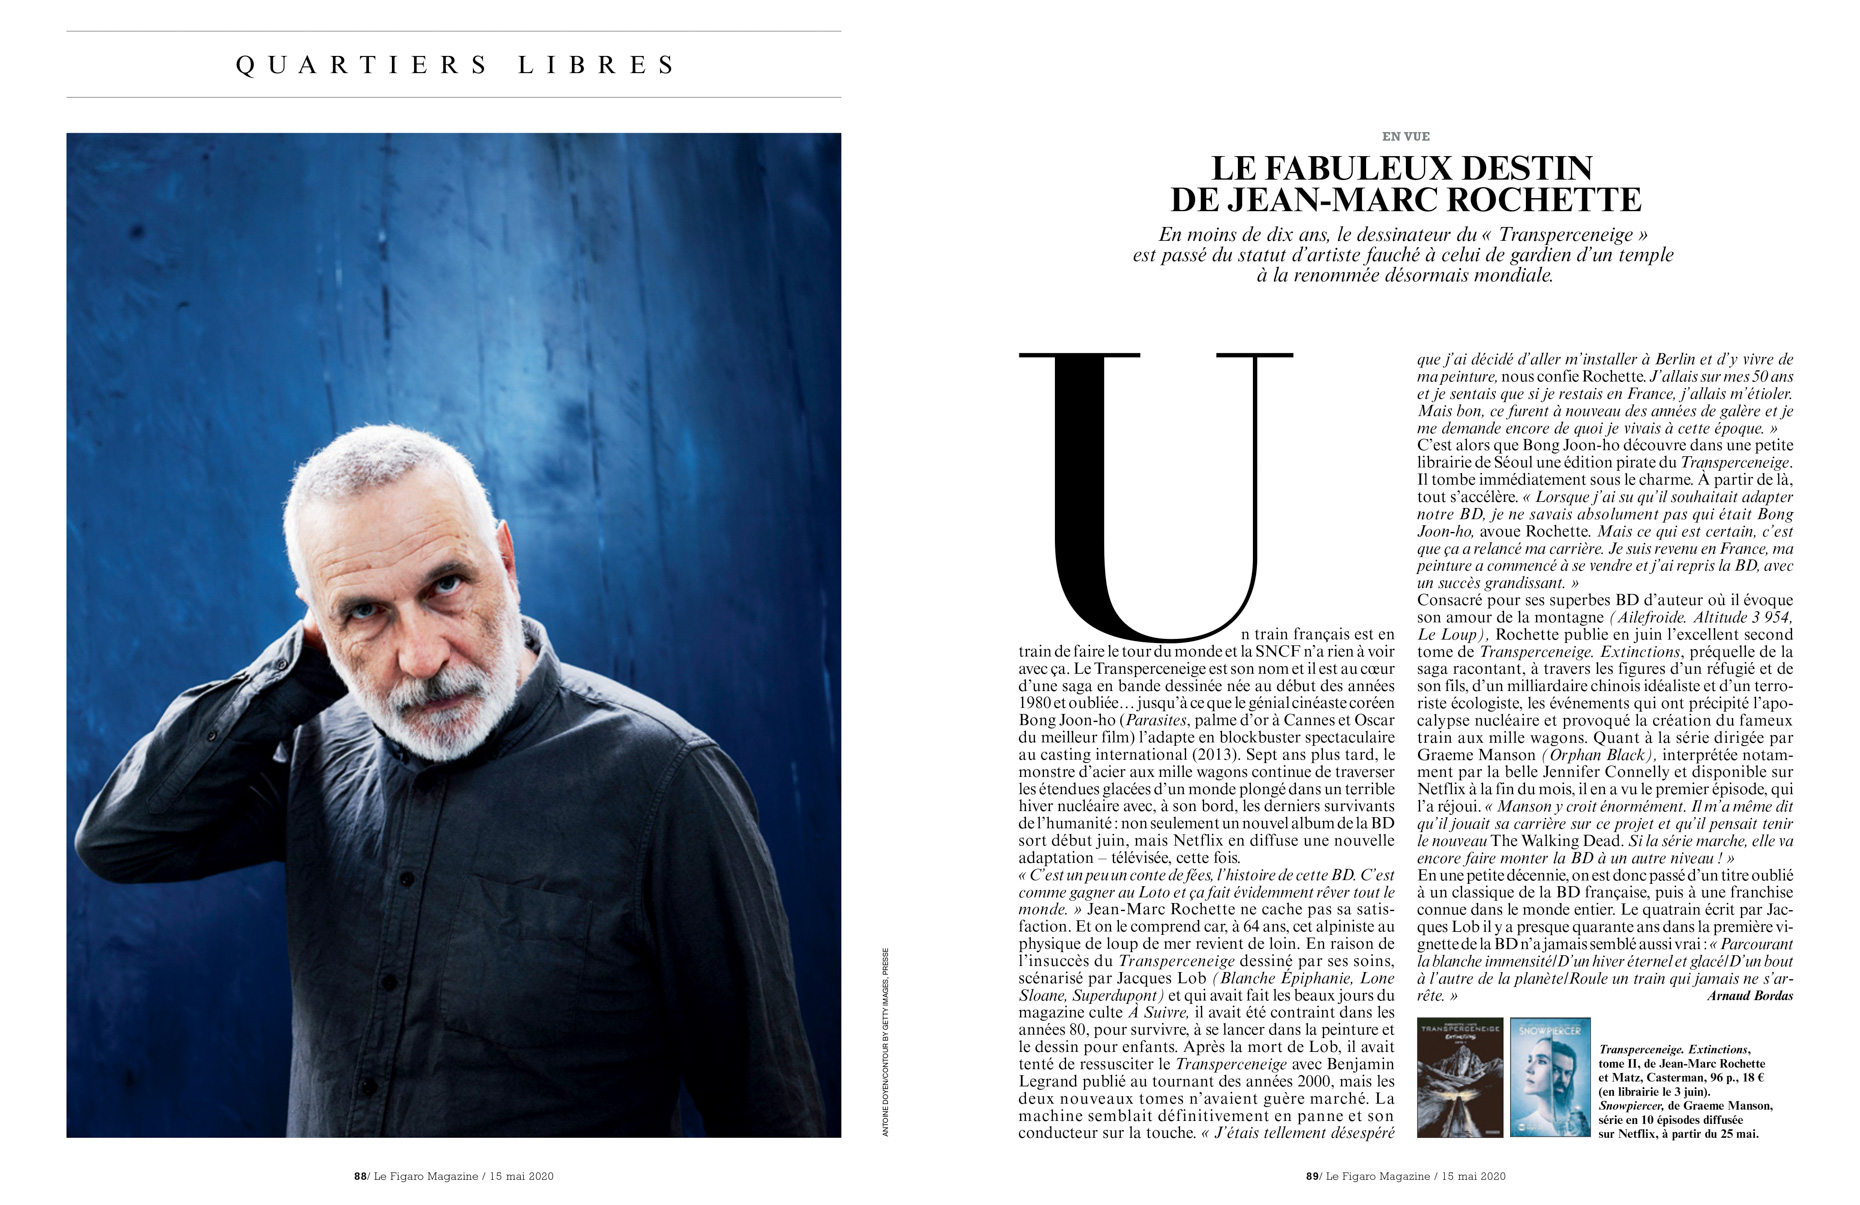 Jean-Marc Rochette - Le Figaro Magazine